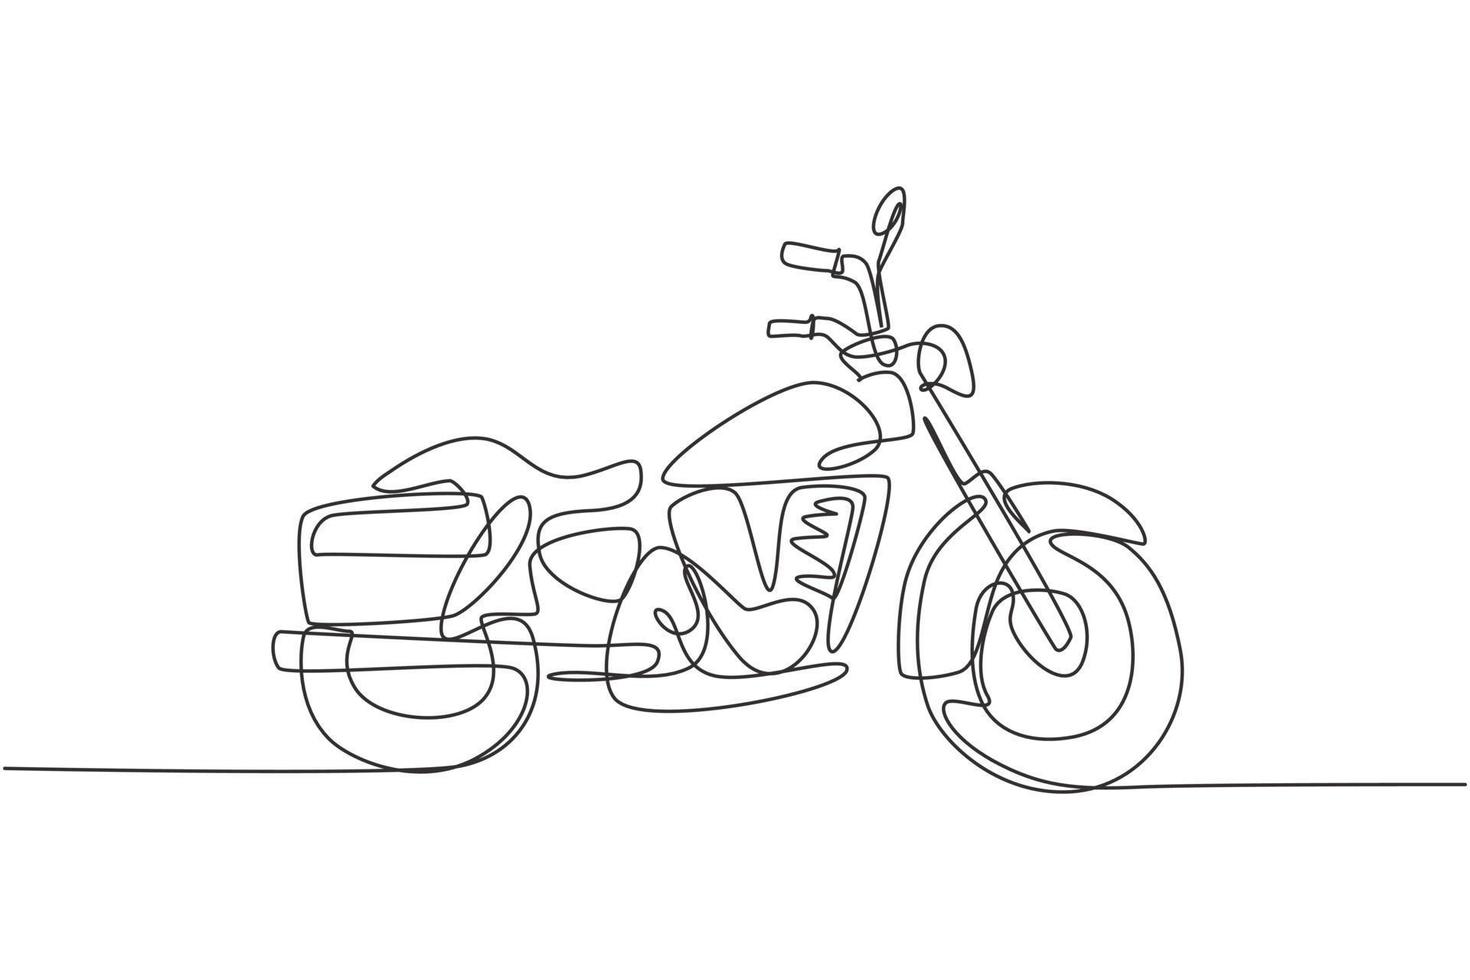 enda kontinuerlig linjeteckning av gammal klassisk vintage motorcykelsymbol. retro motorcykel transport koncept en linje rita design vektor grafisk illustration